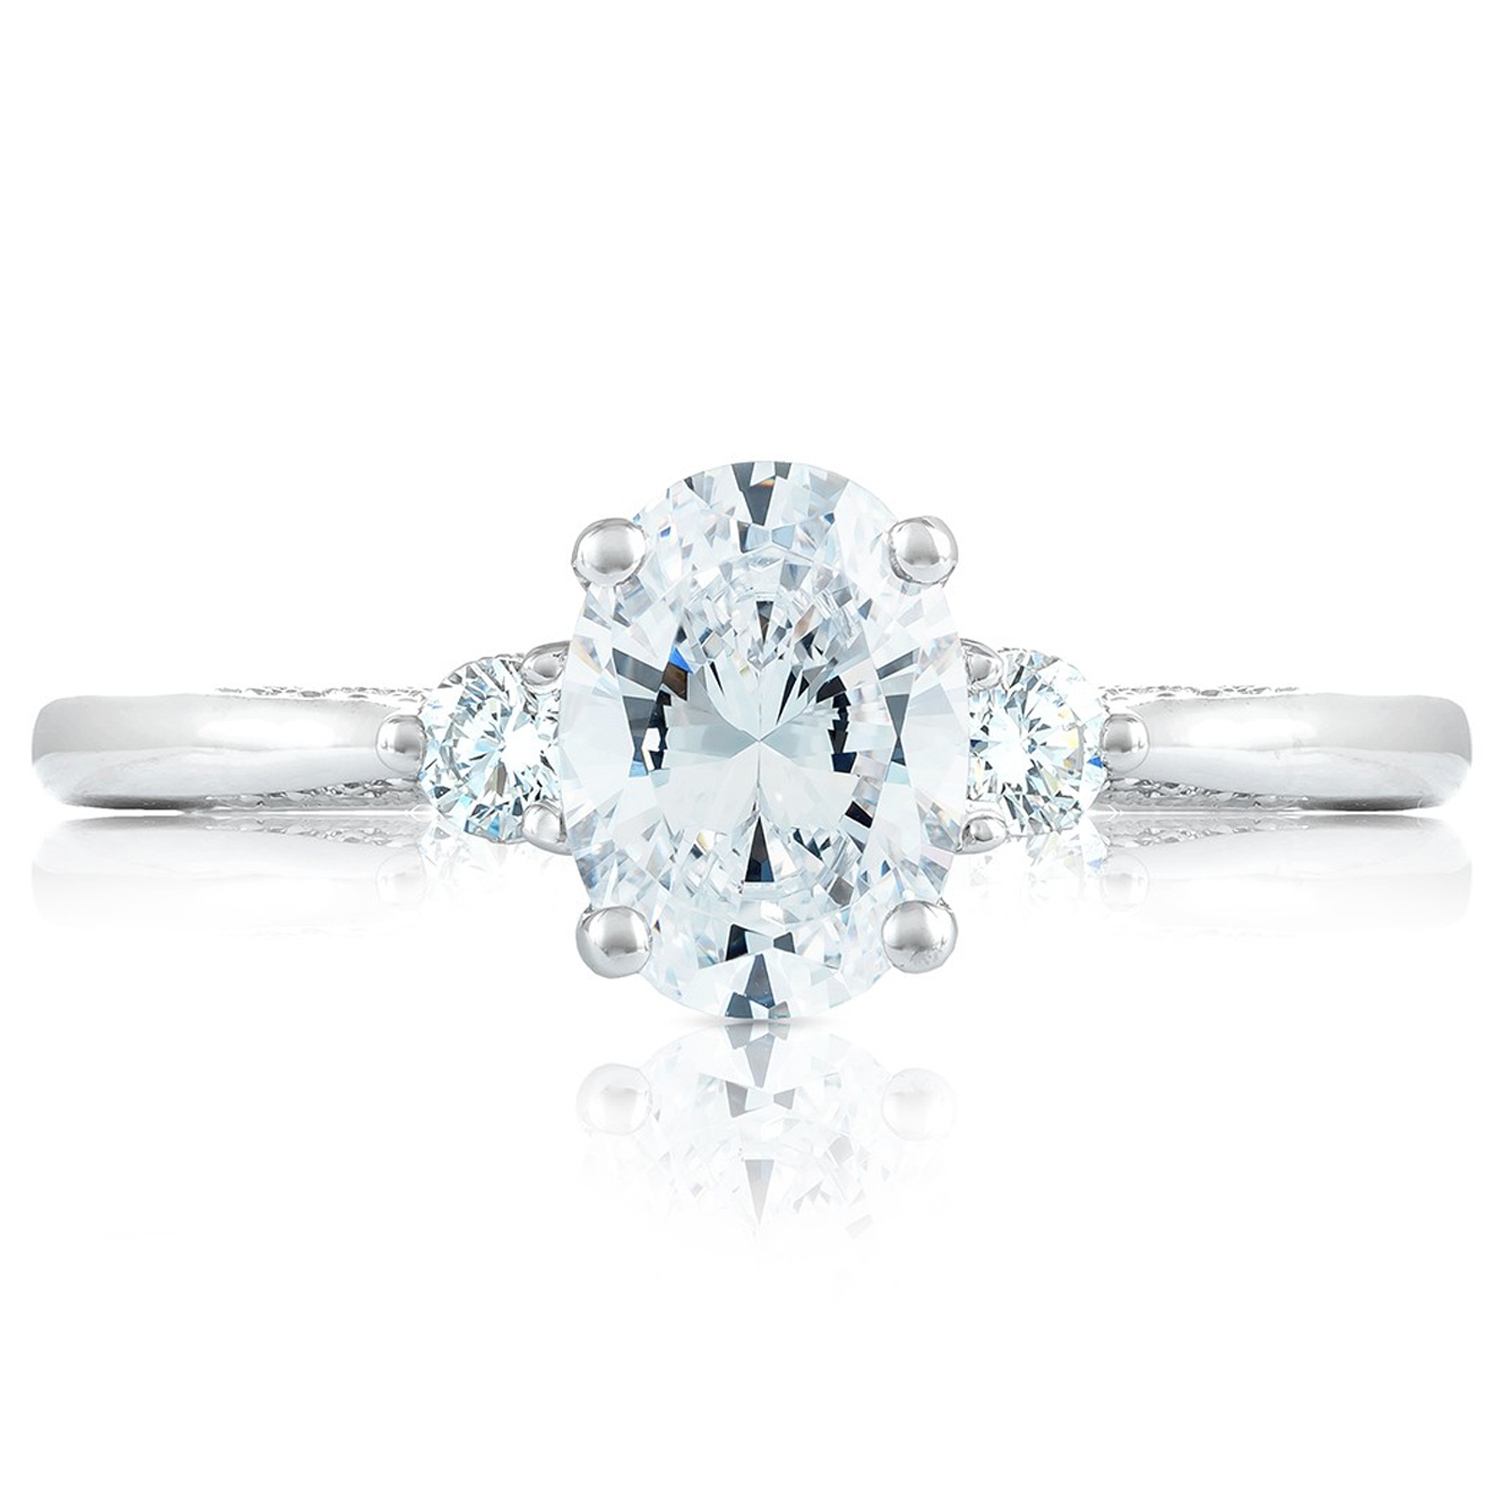 2656OV75X55 Platinum Simply Tacori Engagement Ring